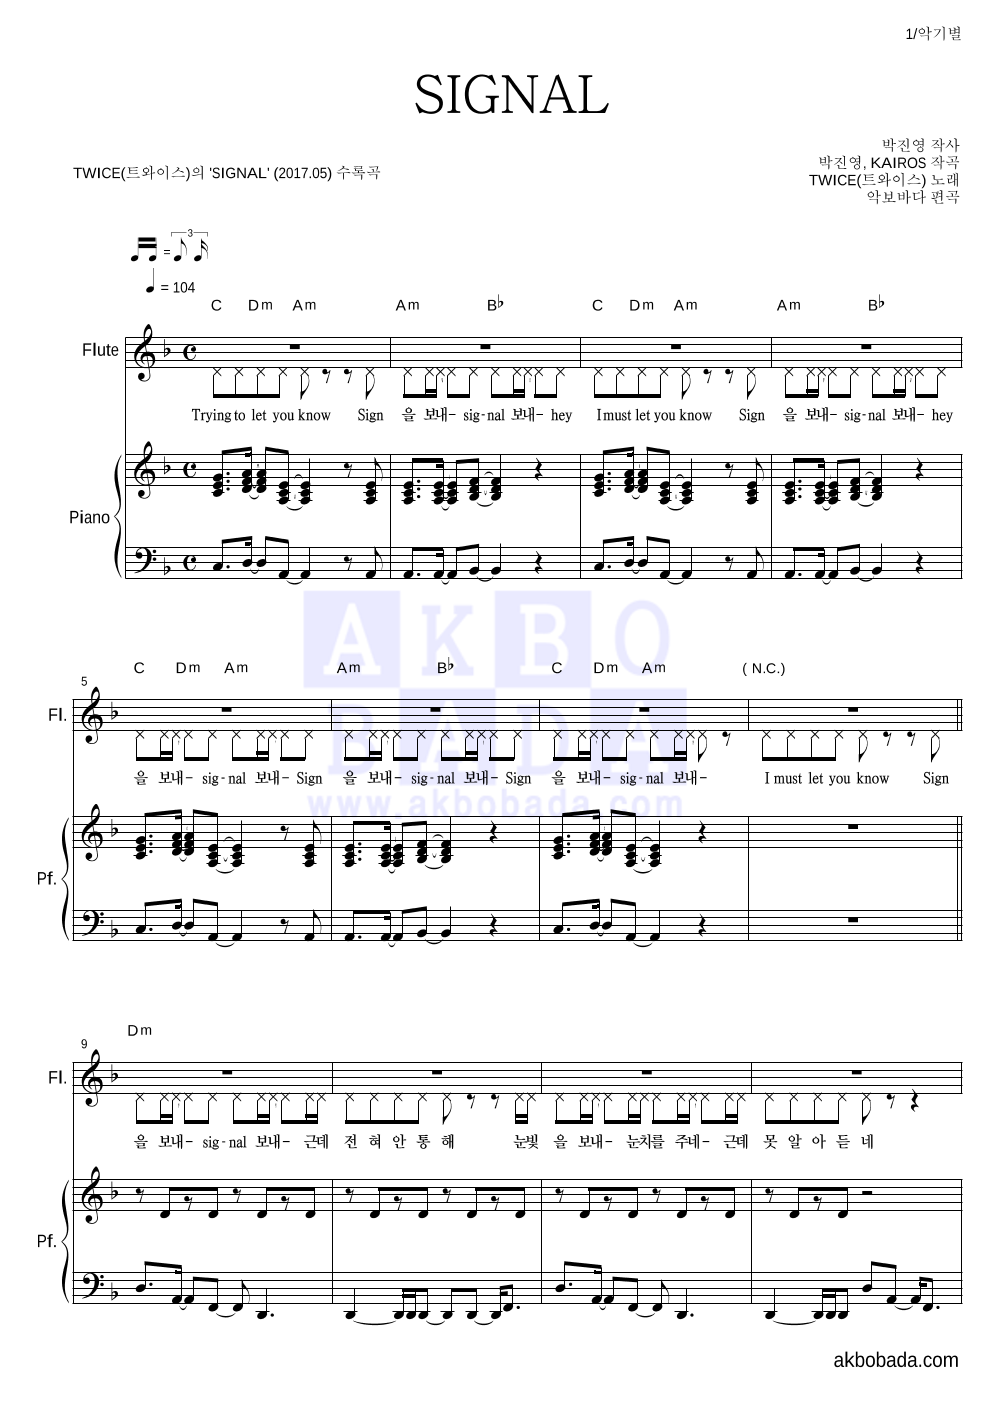 트와이스 - SIGNAL 플룻&피아노 악보 